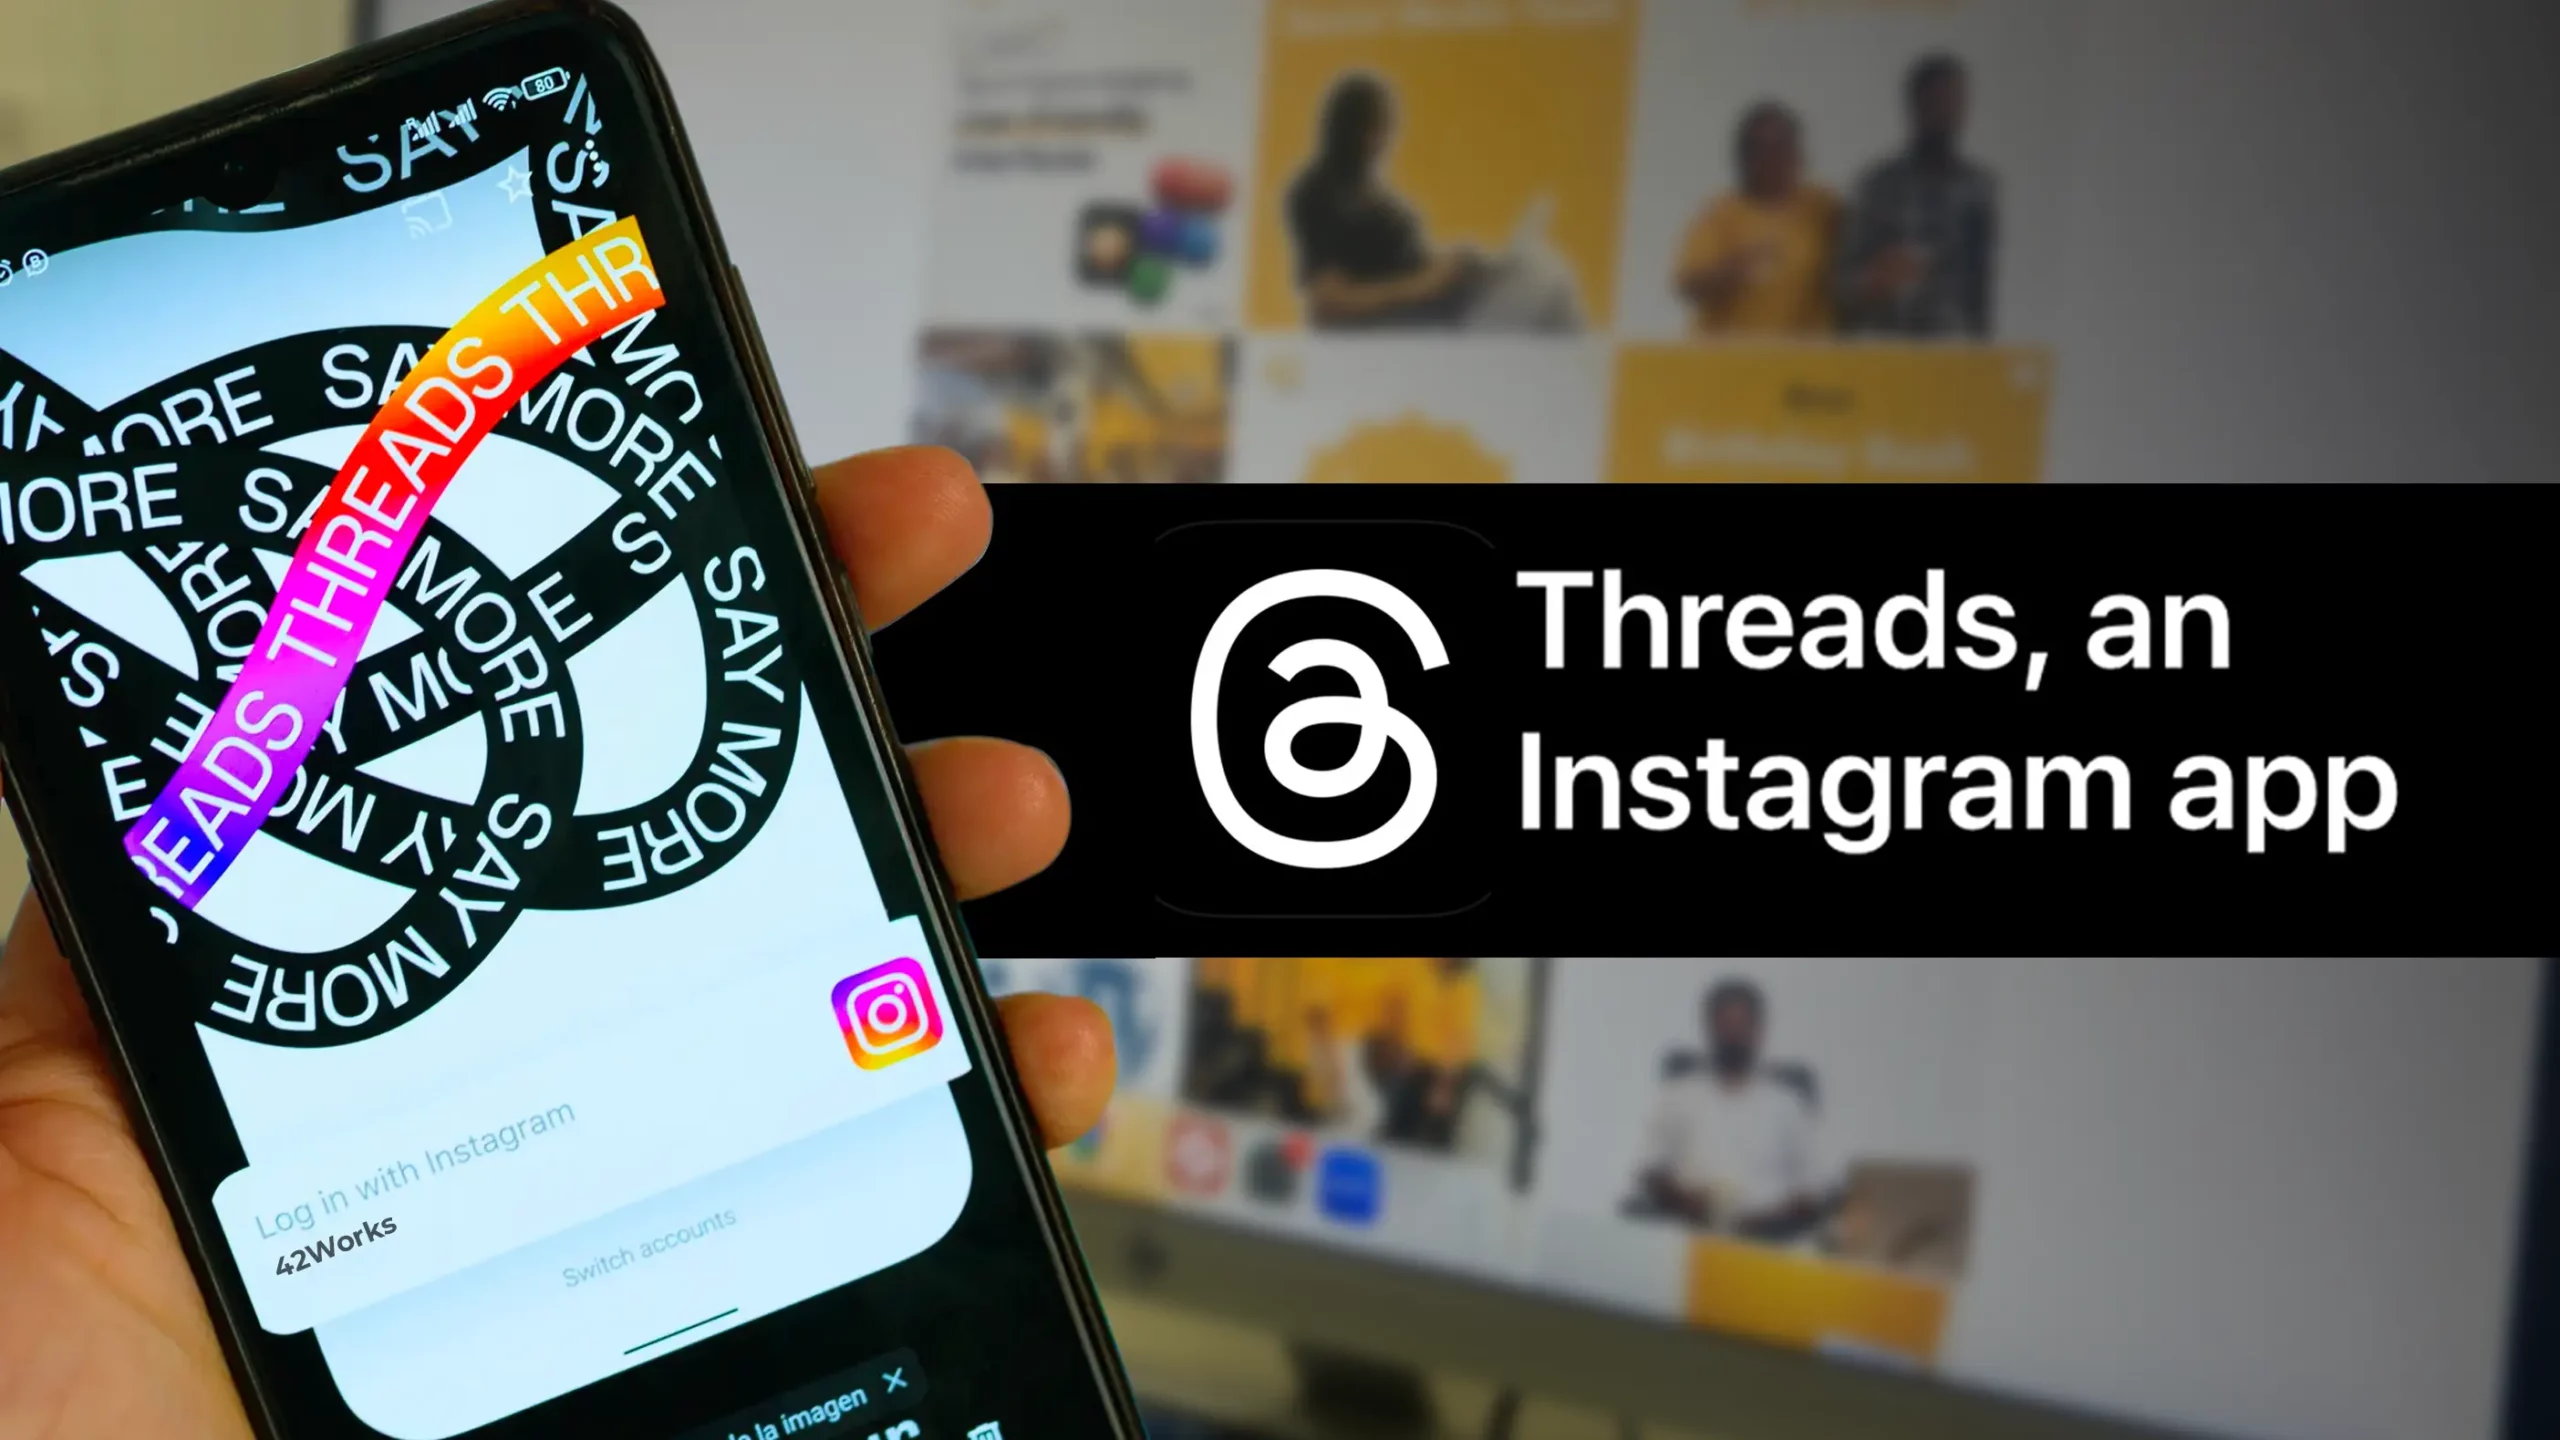 Instagram launches new “Twitter Killer” Threads app